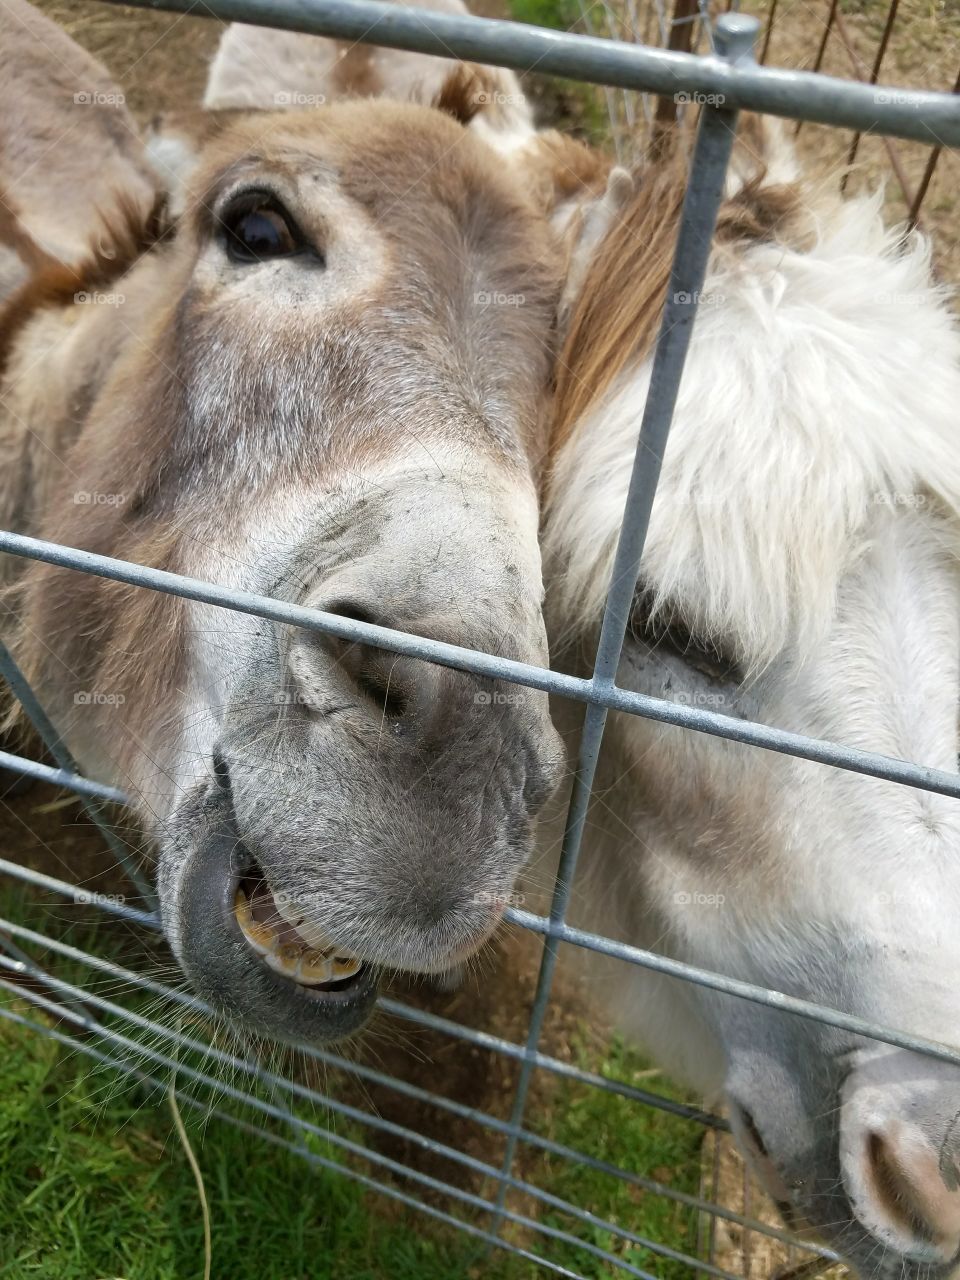 Hungary donkeys waiting to be fed